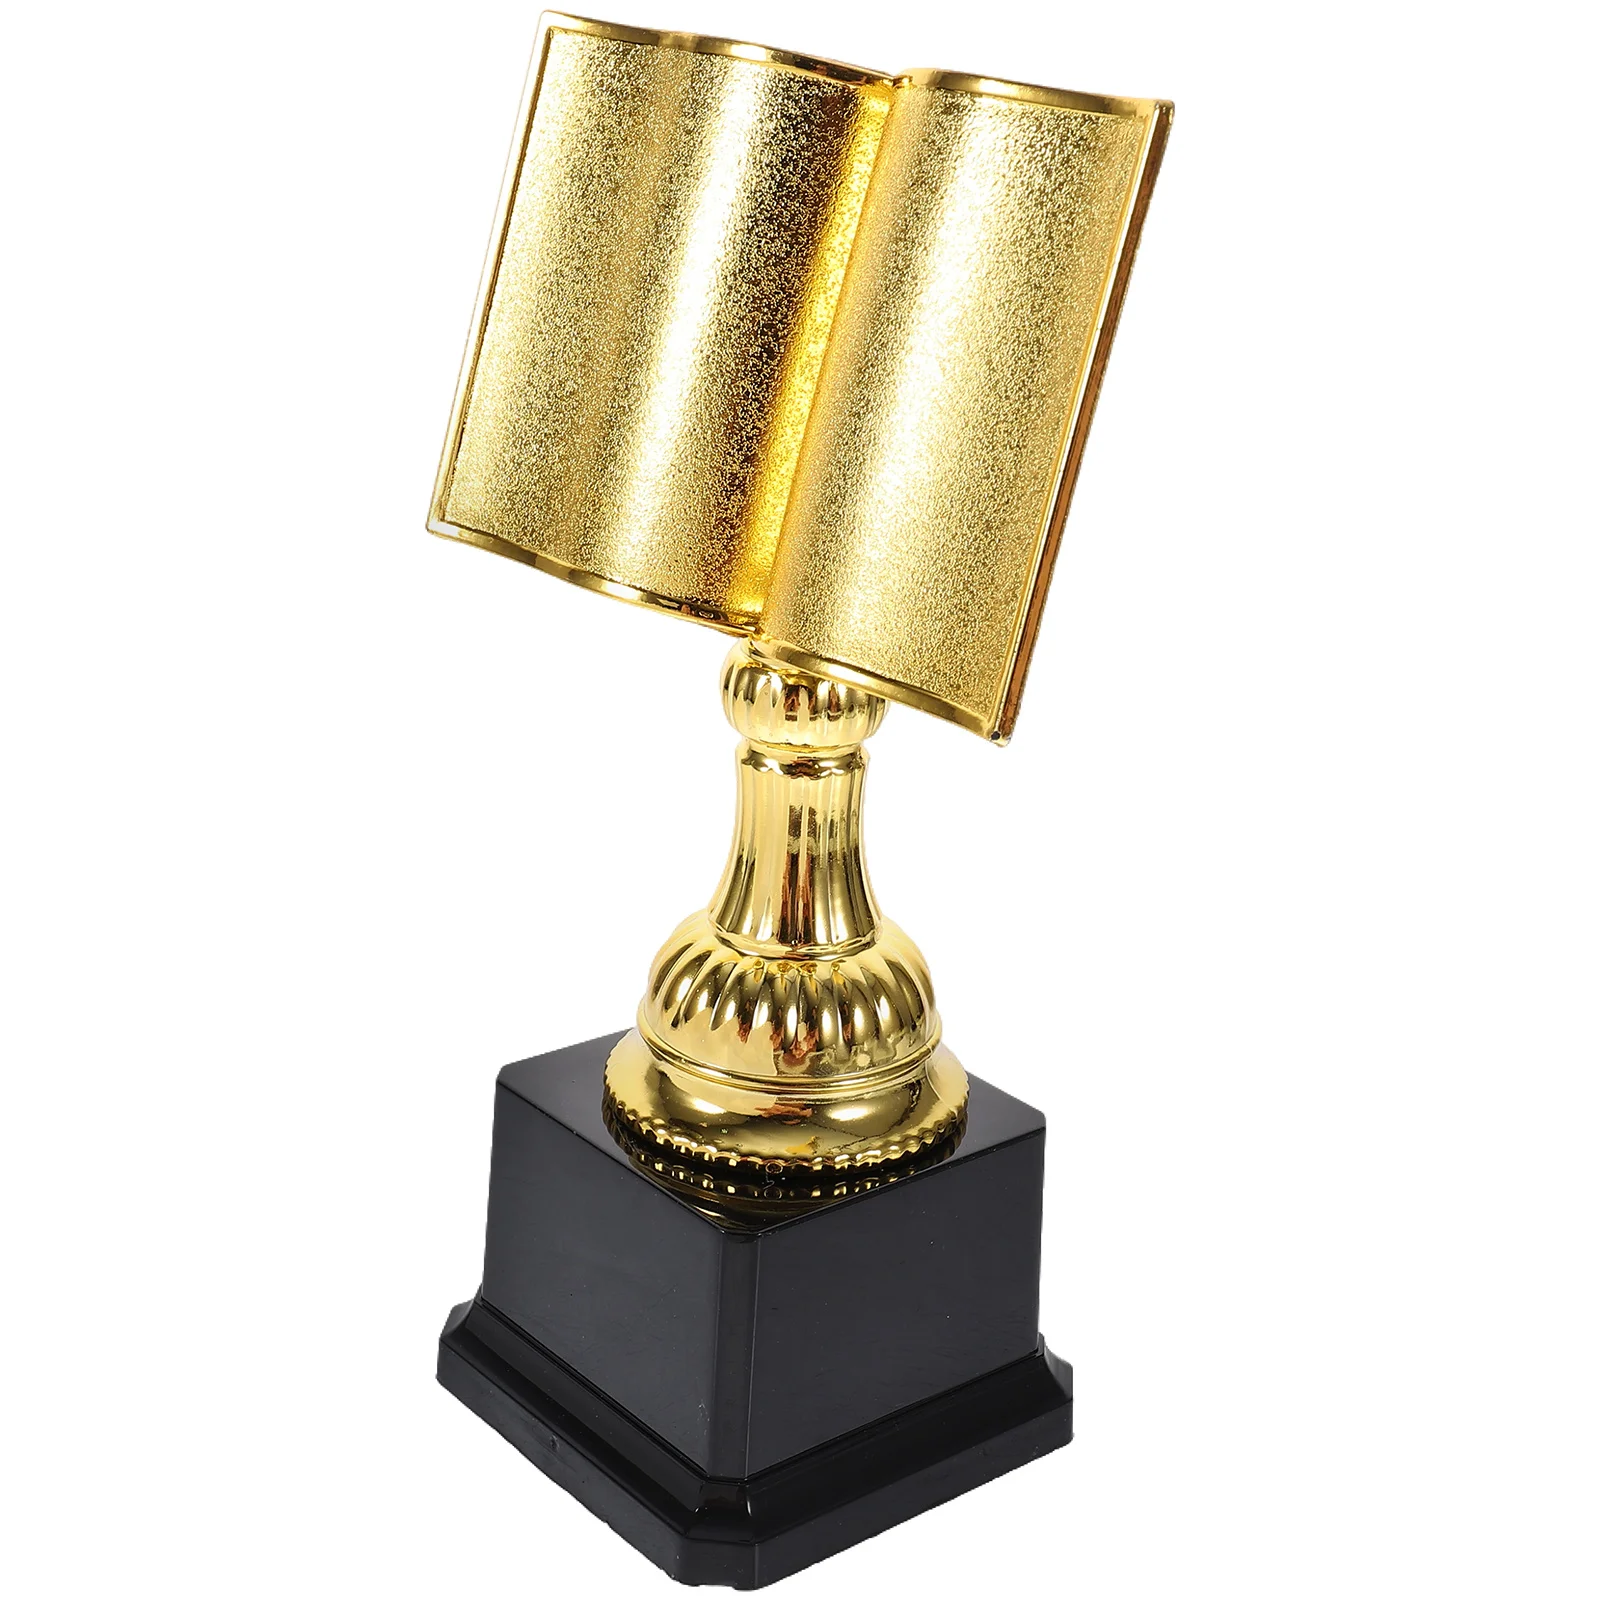 

Название на английском языке: золотой трофей награды в форме книги, пластиковый трофей, чтение, звезда, трофей, награды на первое место, чемпион